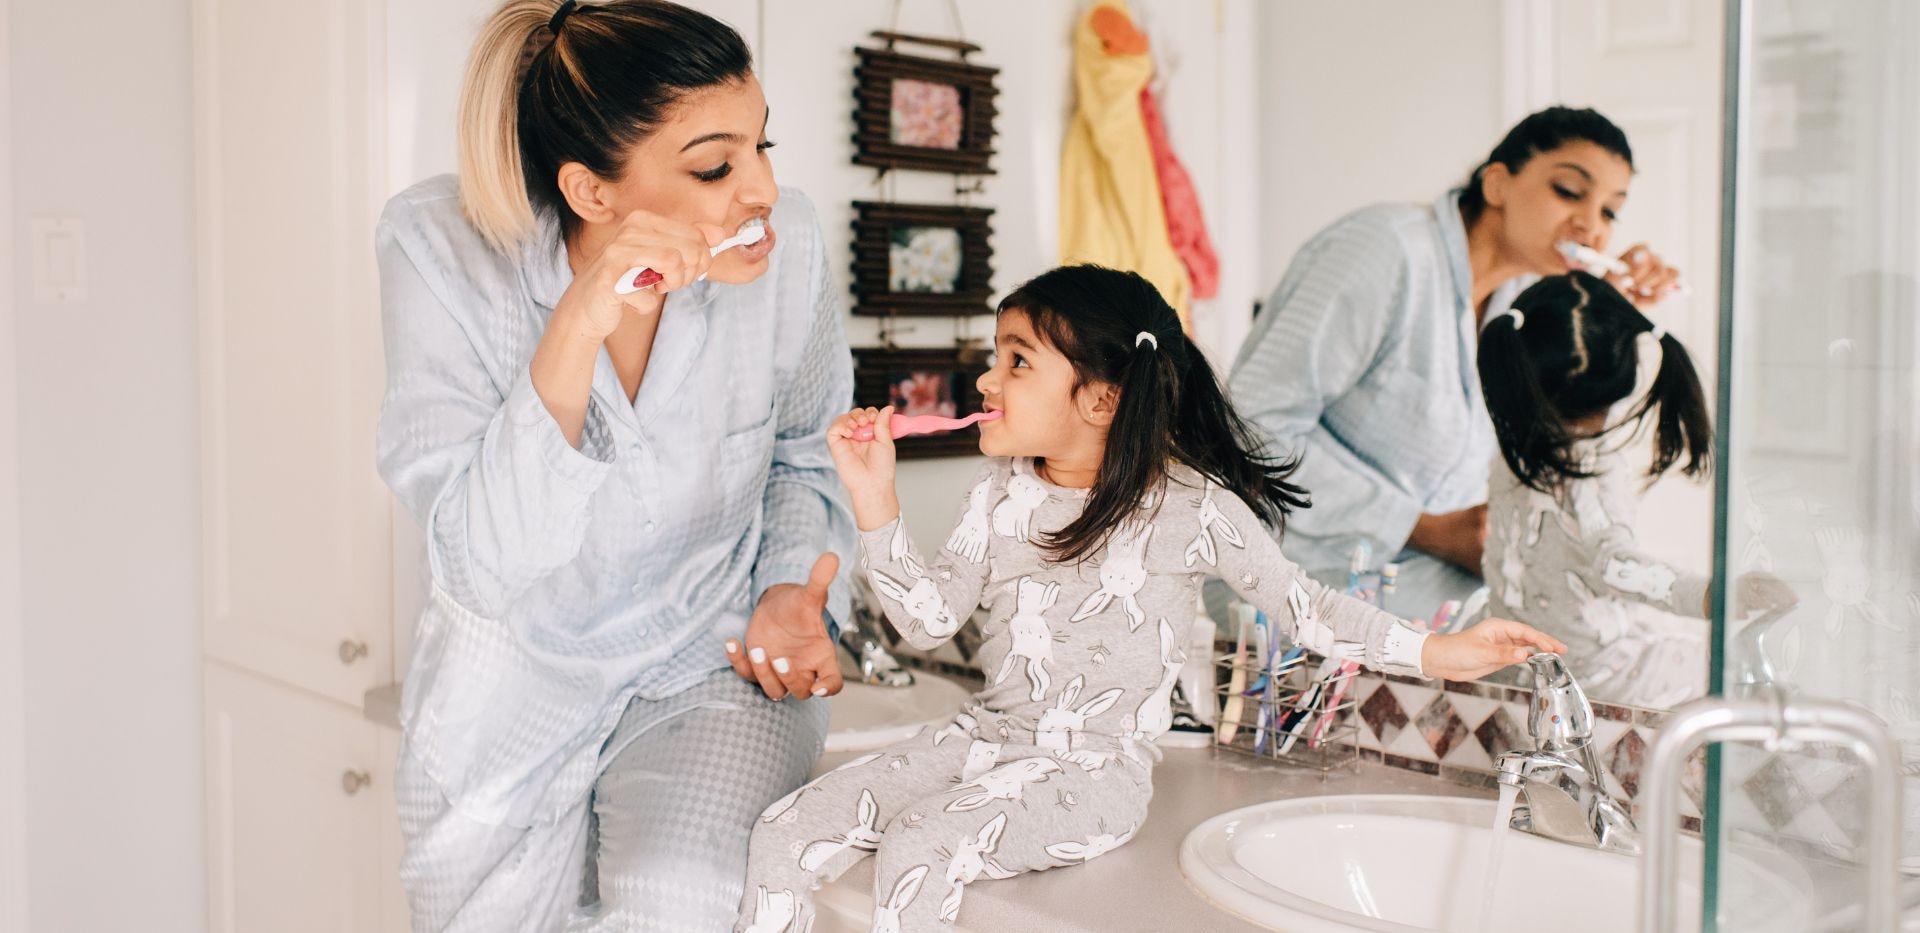 Matka a dítě si společně čistí zuby v koupelně.